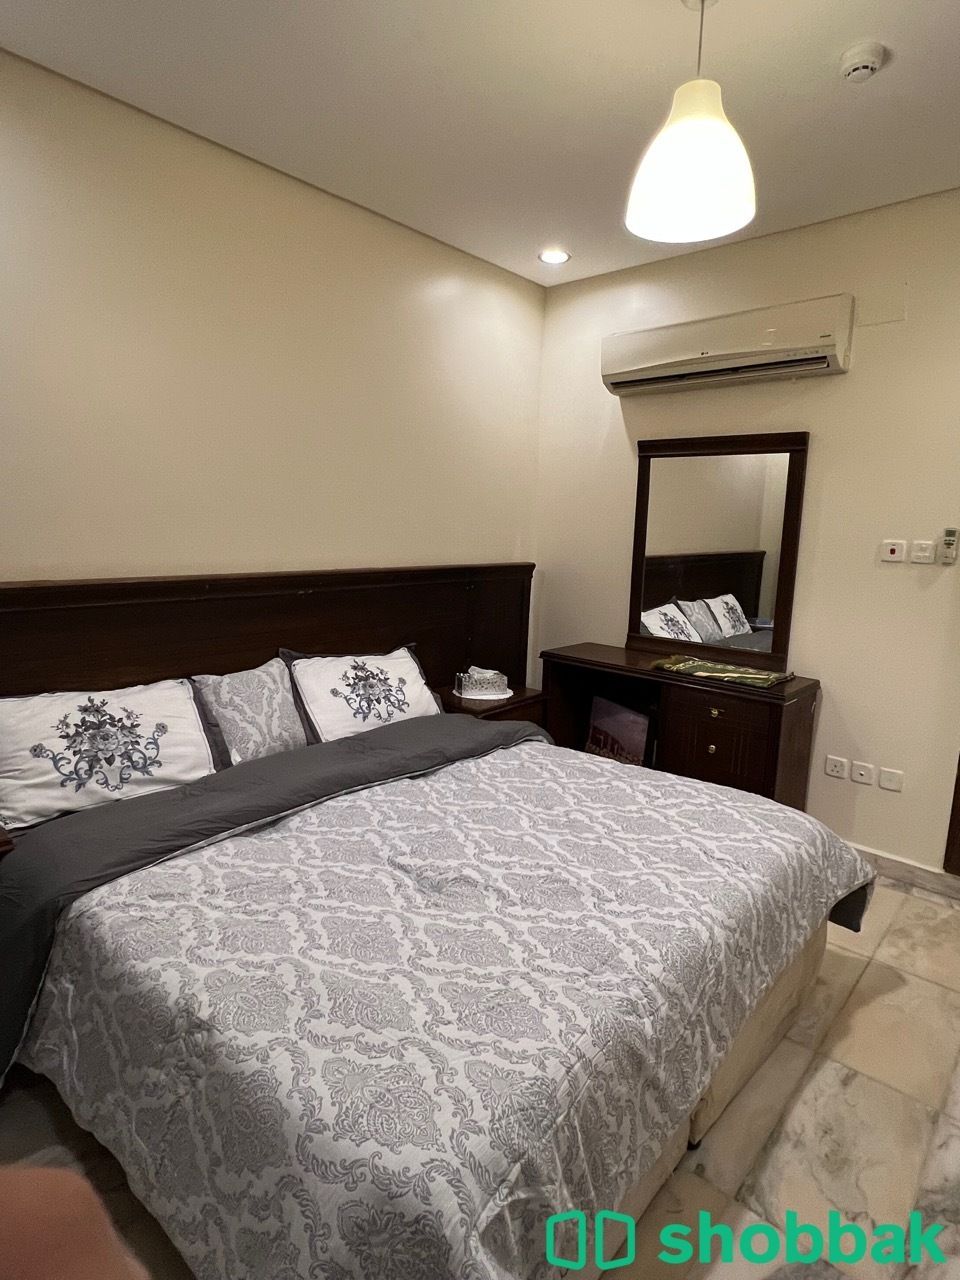 شقة غرفتين وصالة ومطبخ ودورتين مياة فاخرة للإيجار Shobbak Saudi Arabia